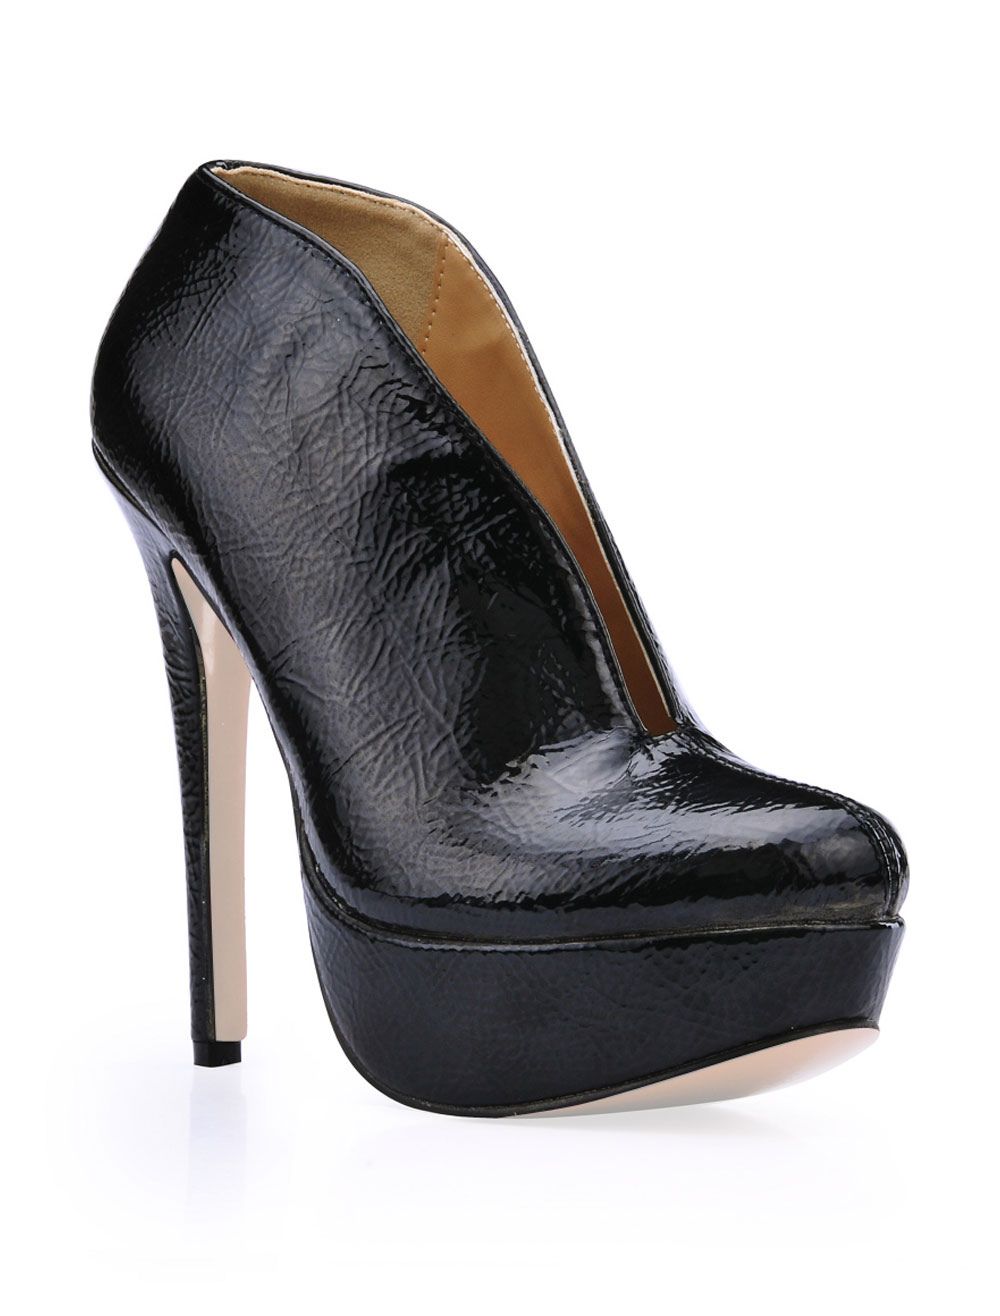 Black Patent Platform Woman's High Heel Booties | Milanoo